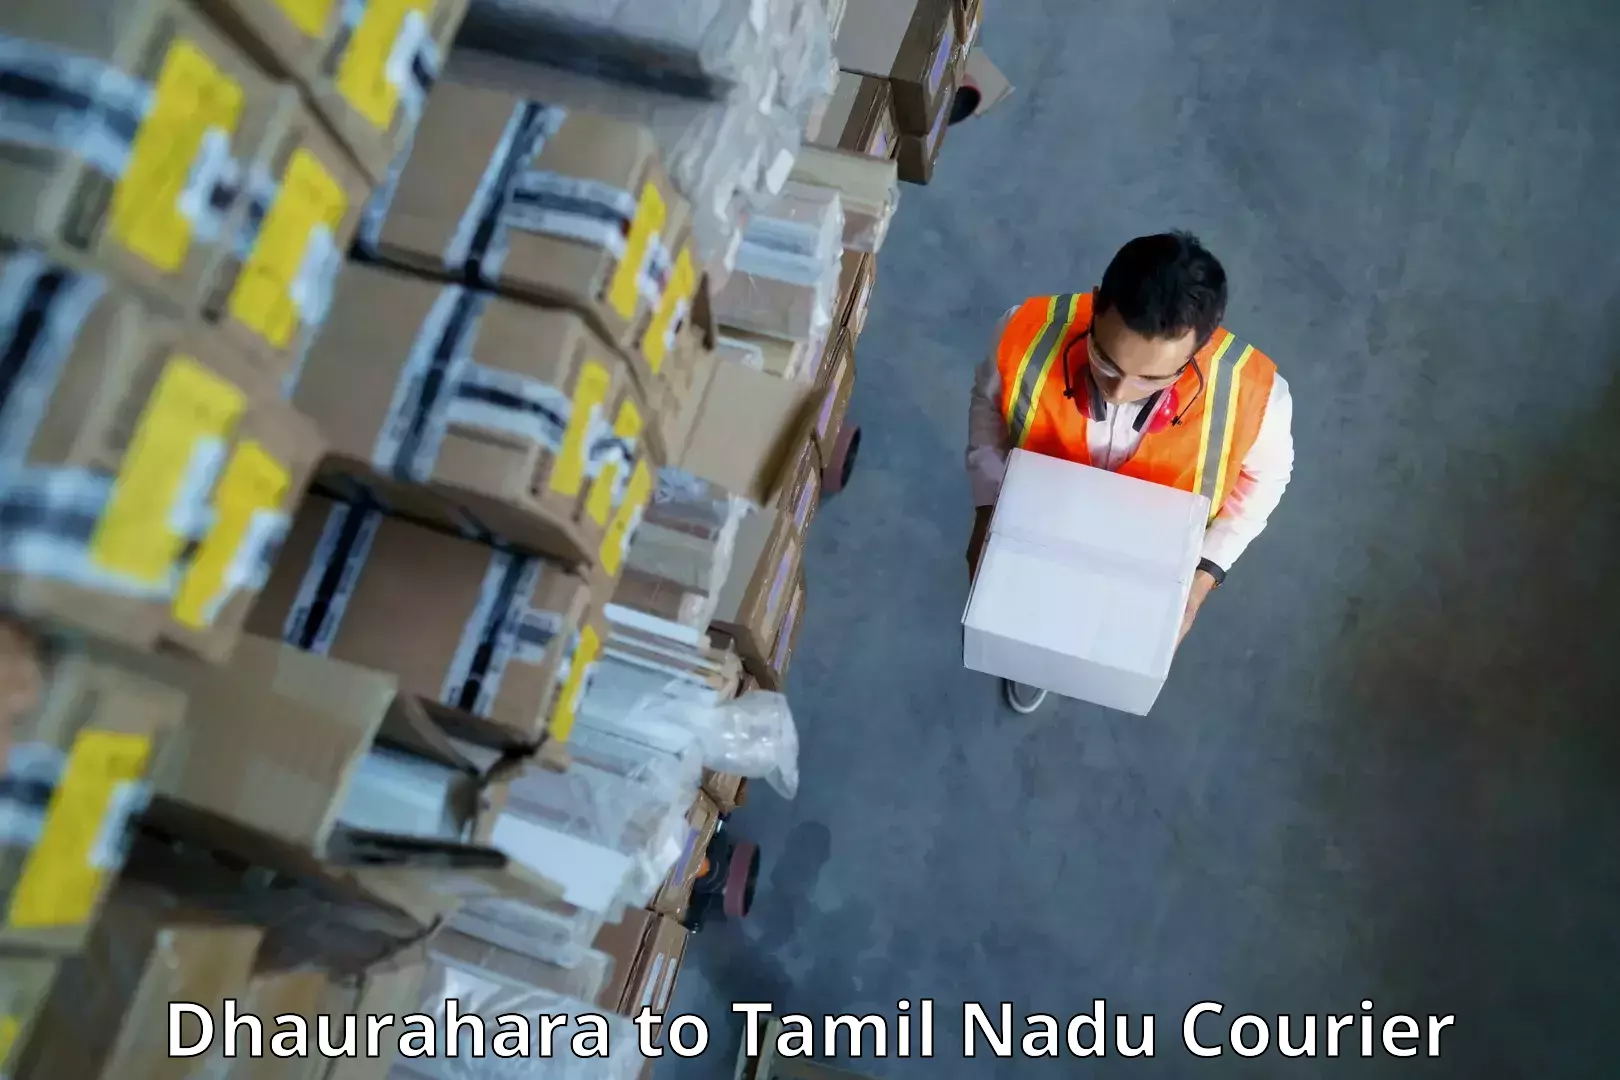 24/7 courier service Dhaurahara to IIIT Tiruchirappalli